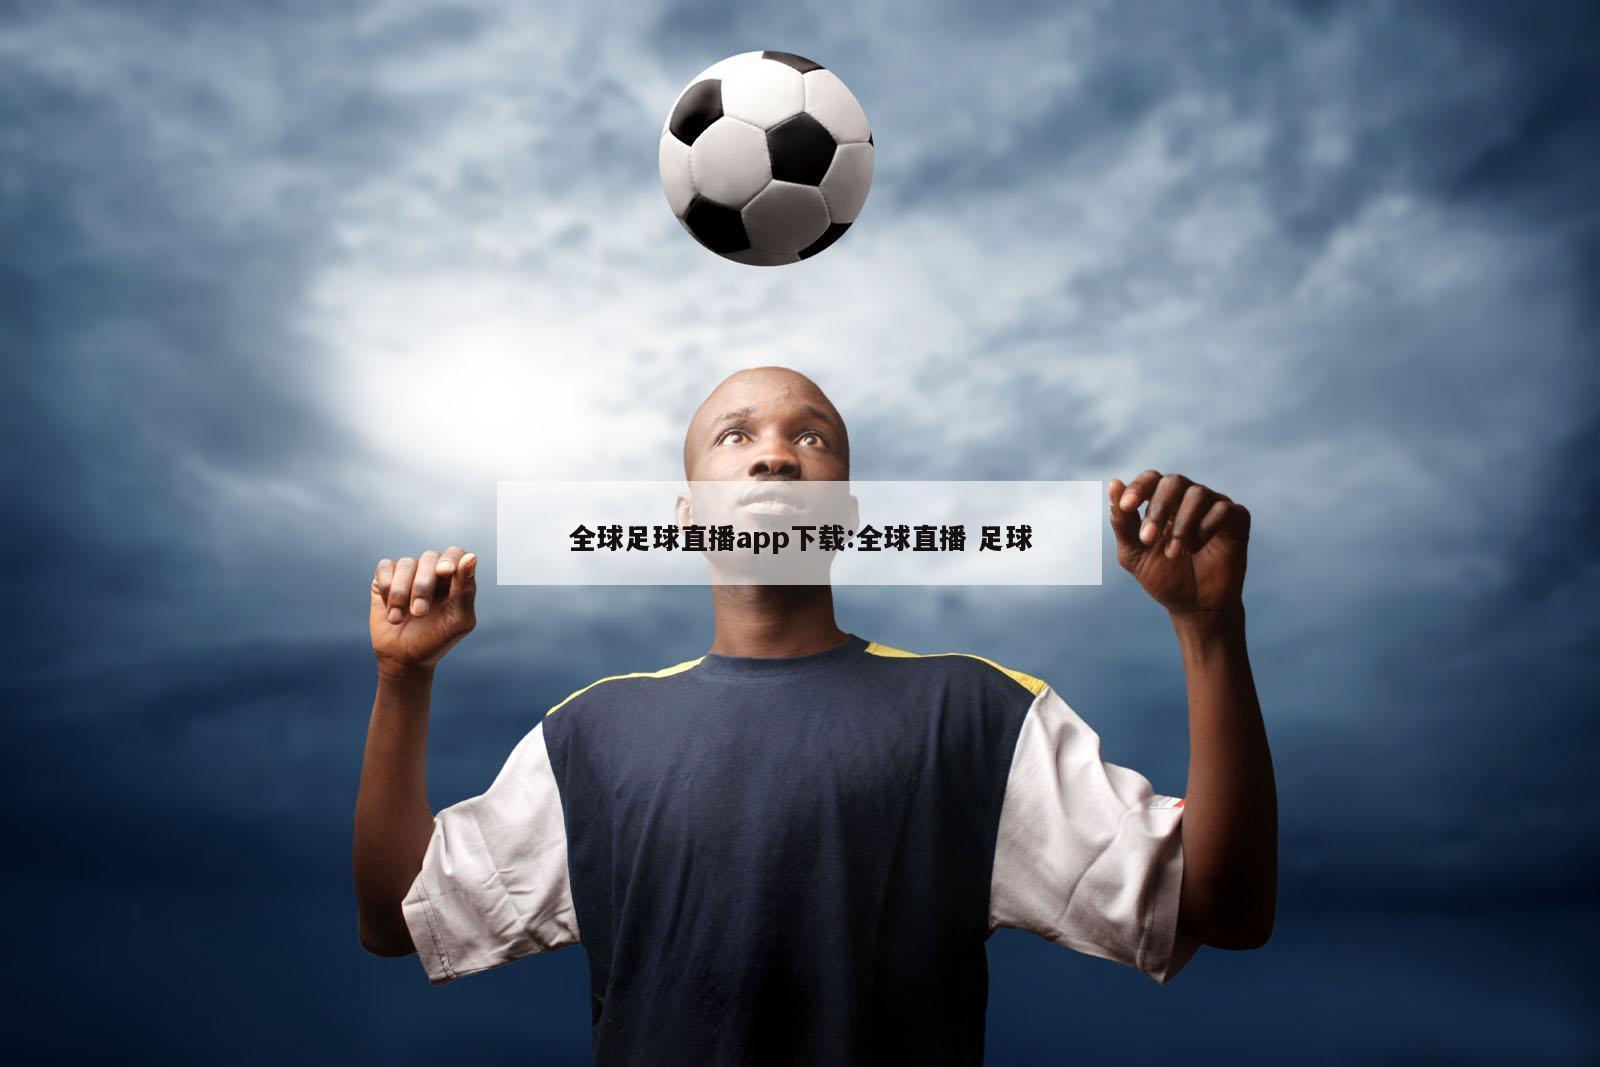 全球足球直播app下载:全球直播 足球